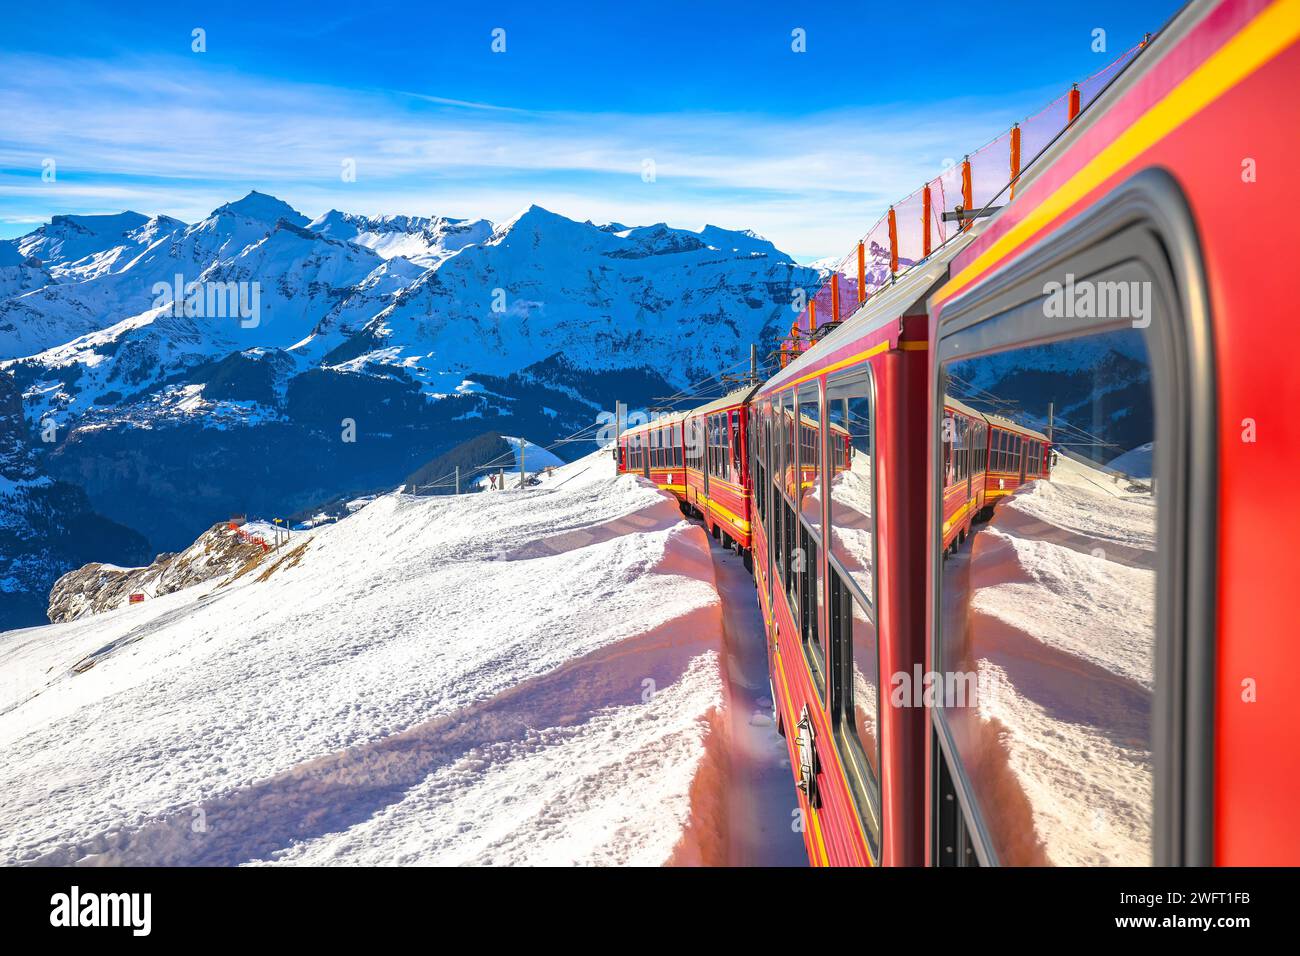 Ferrovia alpina Eigergletscher fino a Jungrafujoch vista dal treno, regione svizzera dell'Oberland Berner Foto Stock